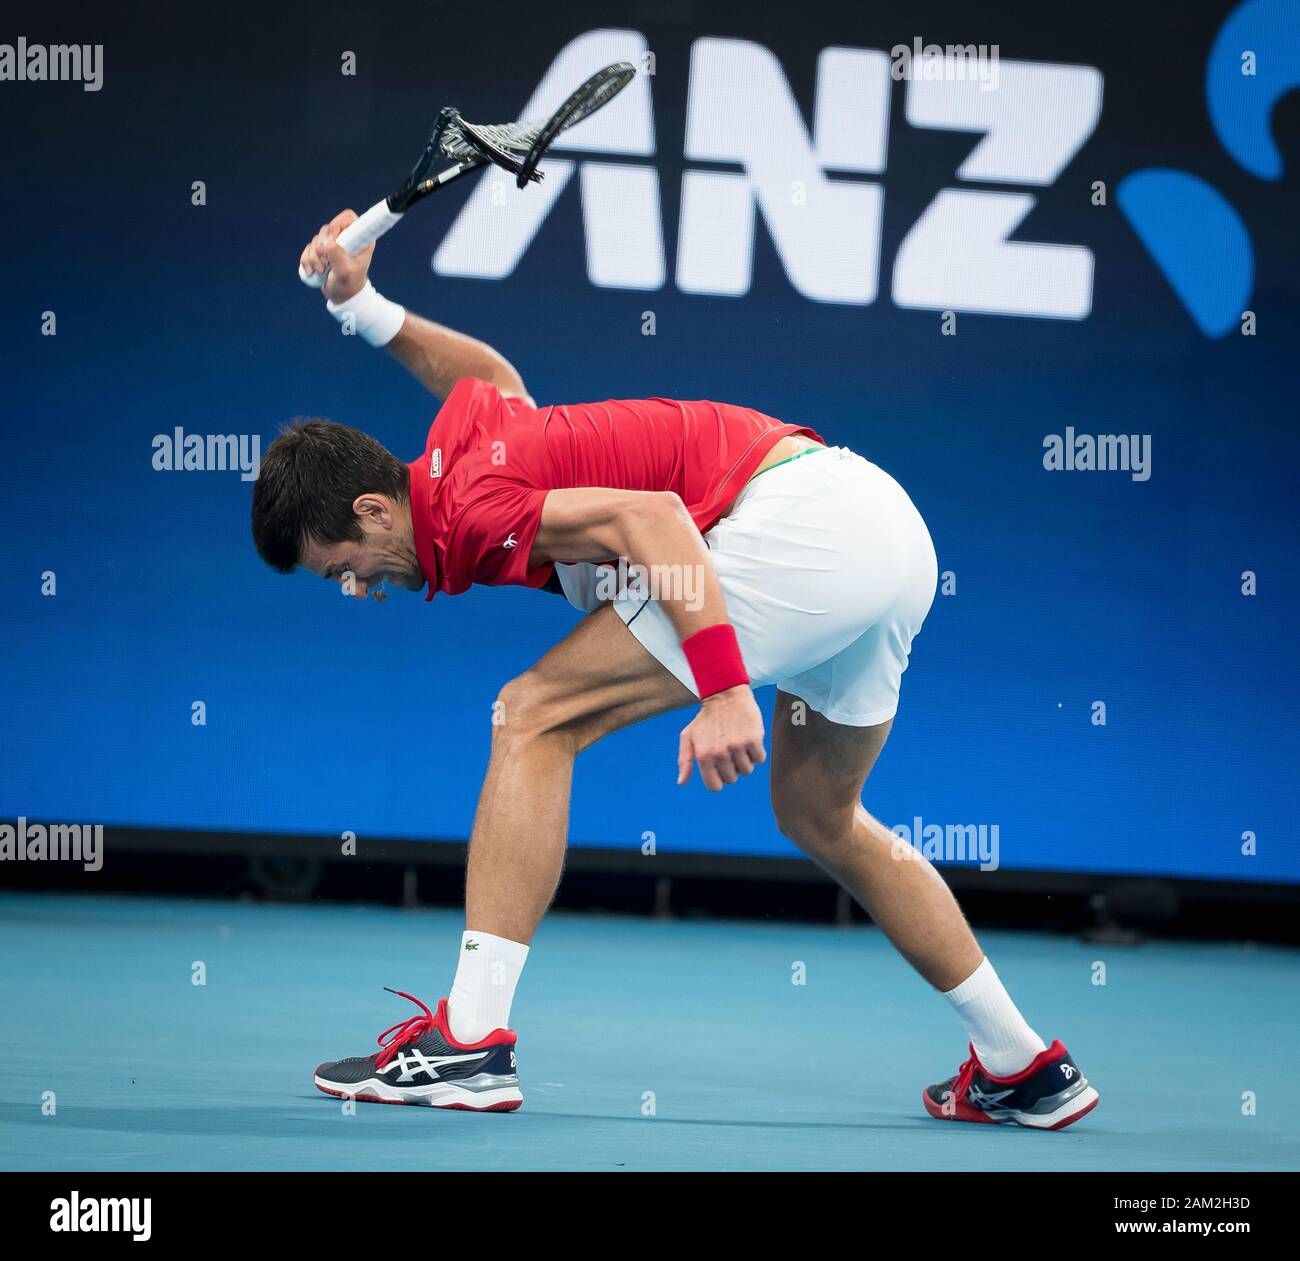 Novak djokovic racquet hi-res stock photography and images - Alamy